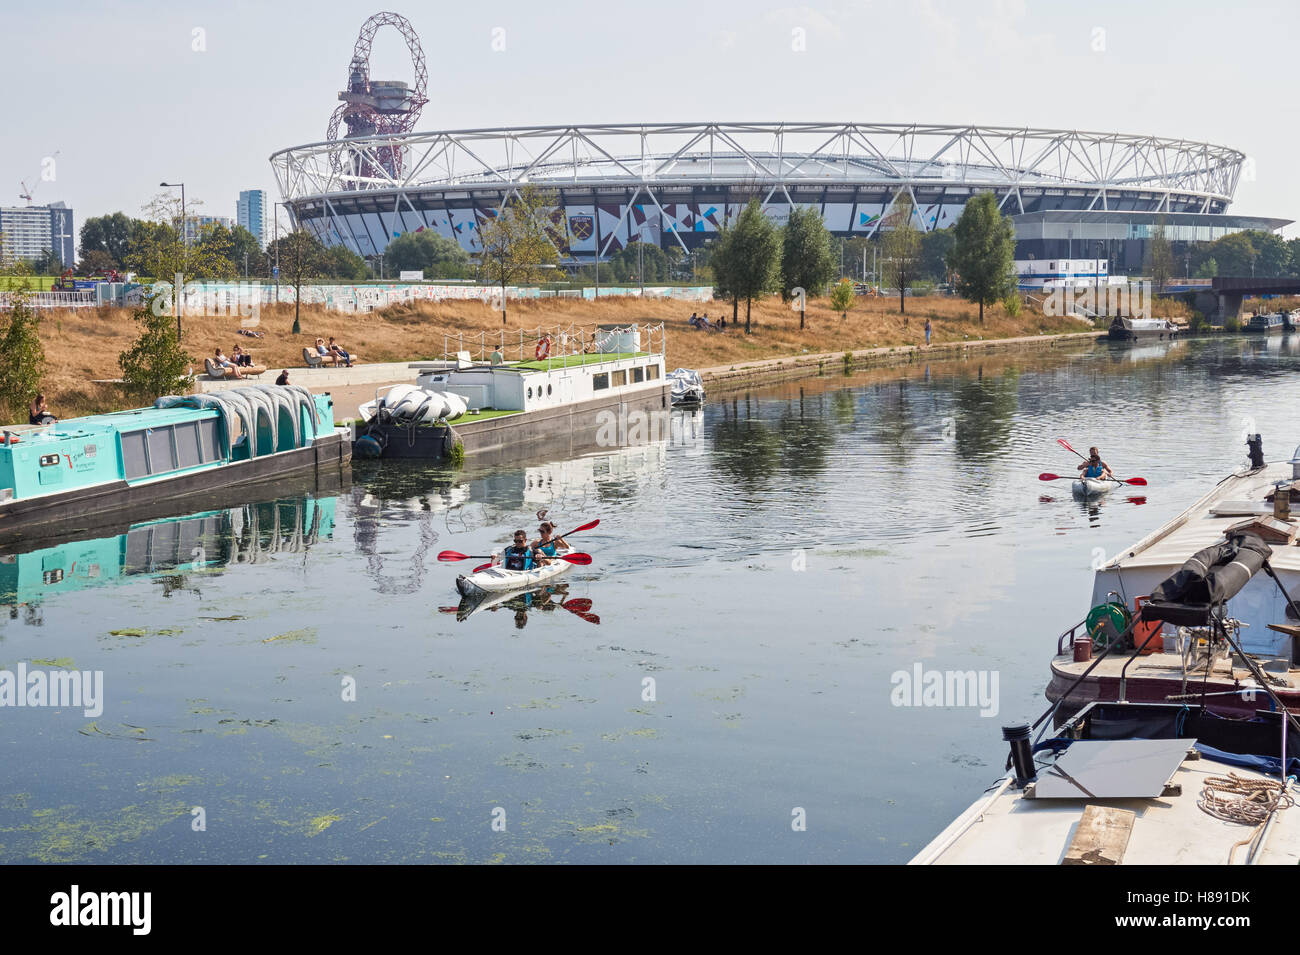 Menschen Kajakfahren auf dem Fluss Lea in Stratford mit London Stadium im Hintergrund, London England Vereinigtes Königreich UK Stockfoto